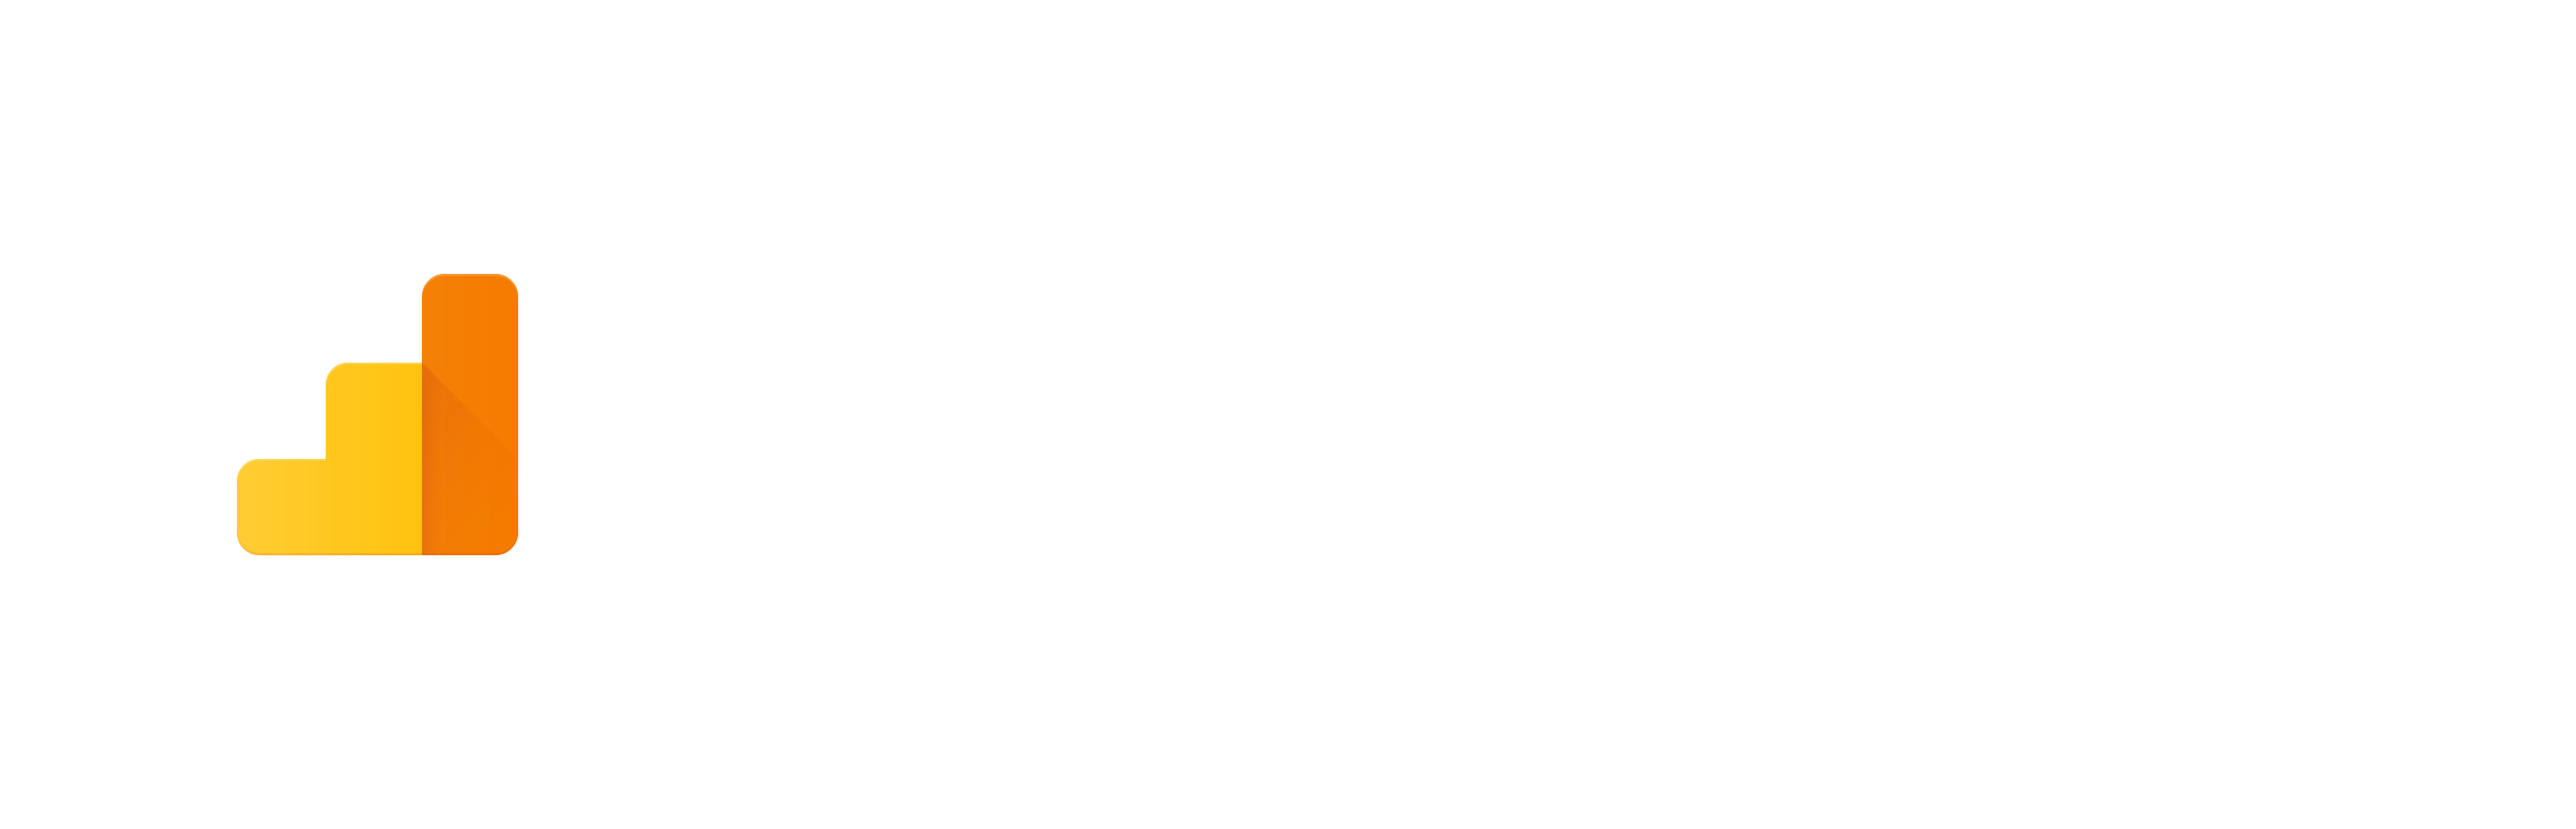 Analytics developer branding guidelines. Google logo white png